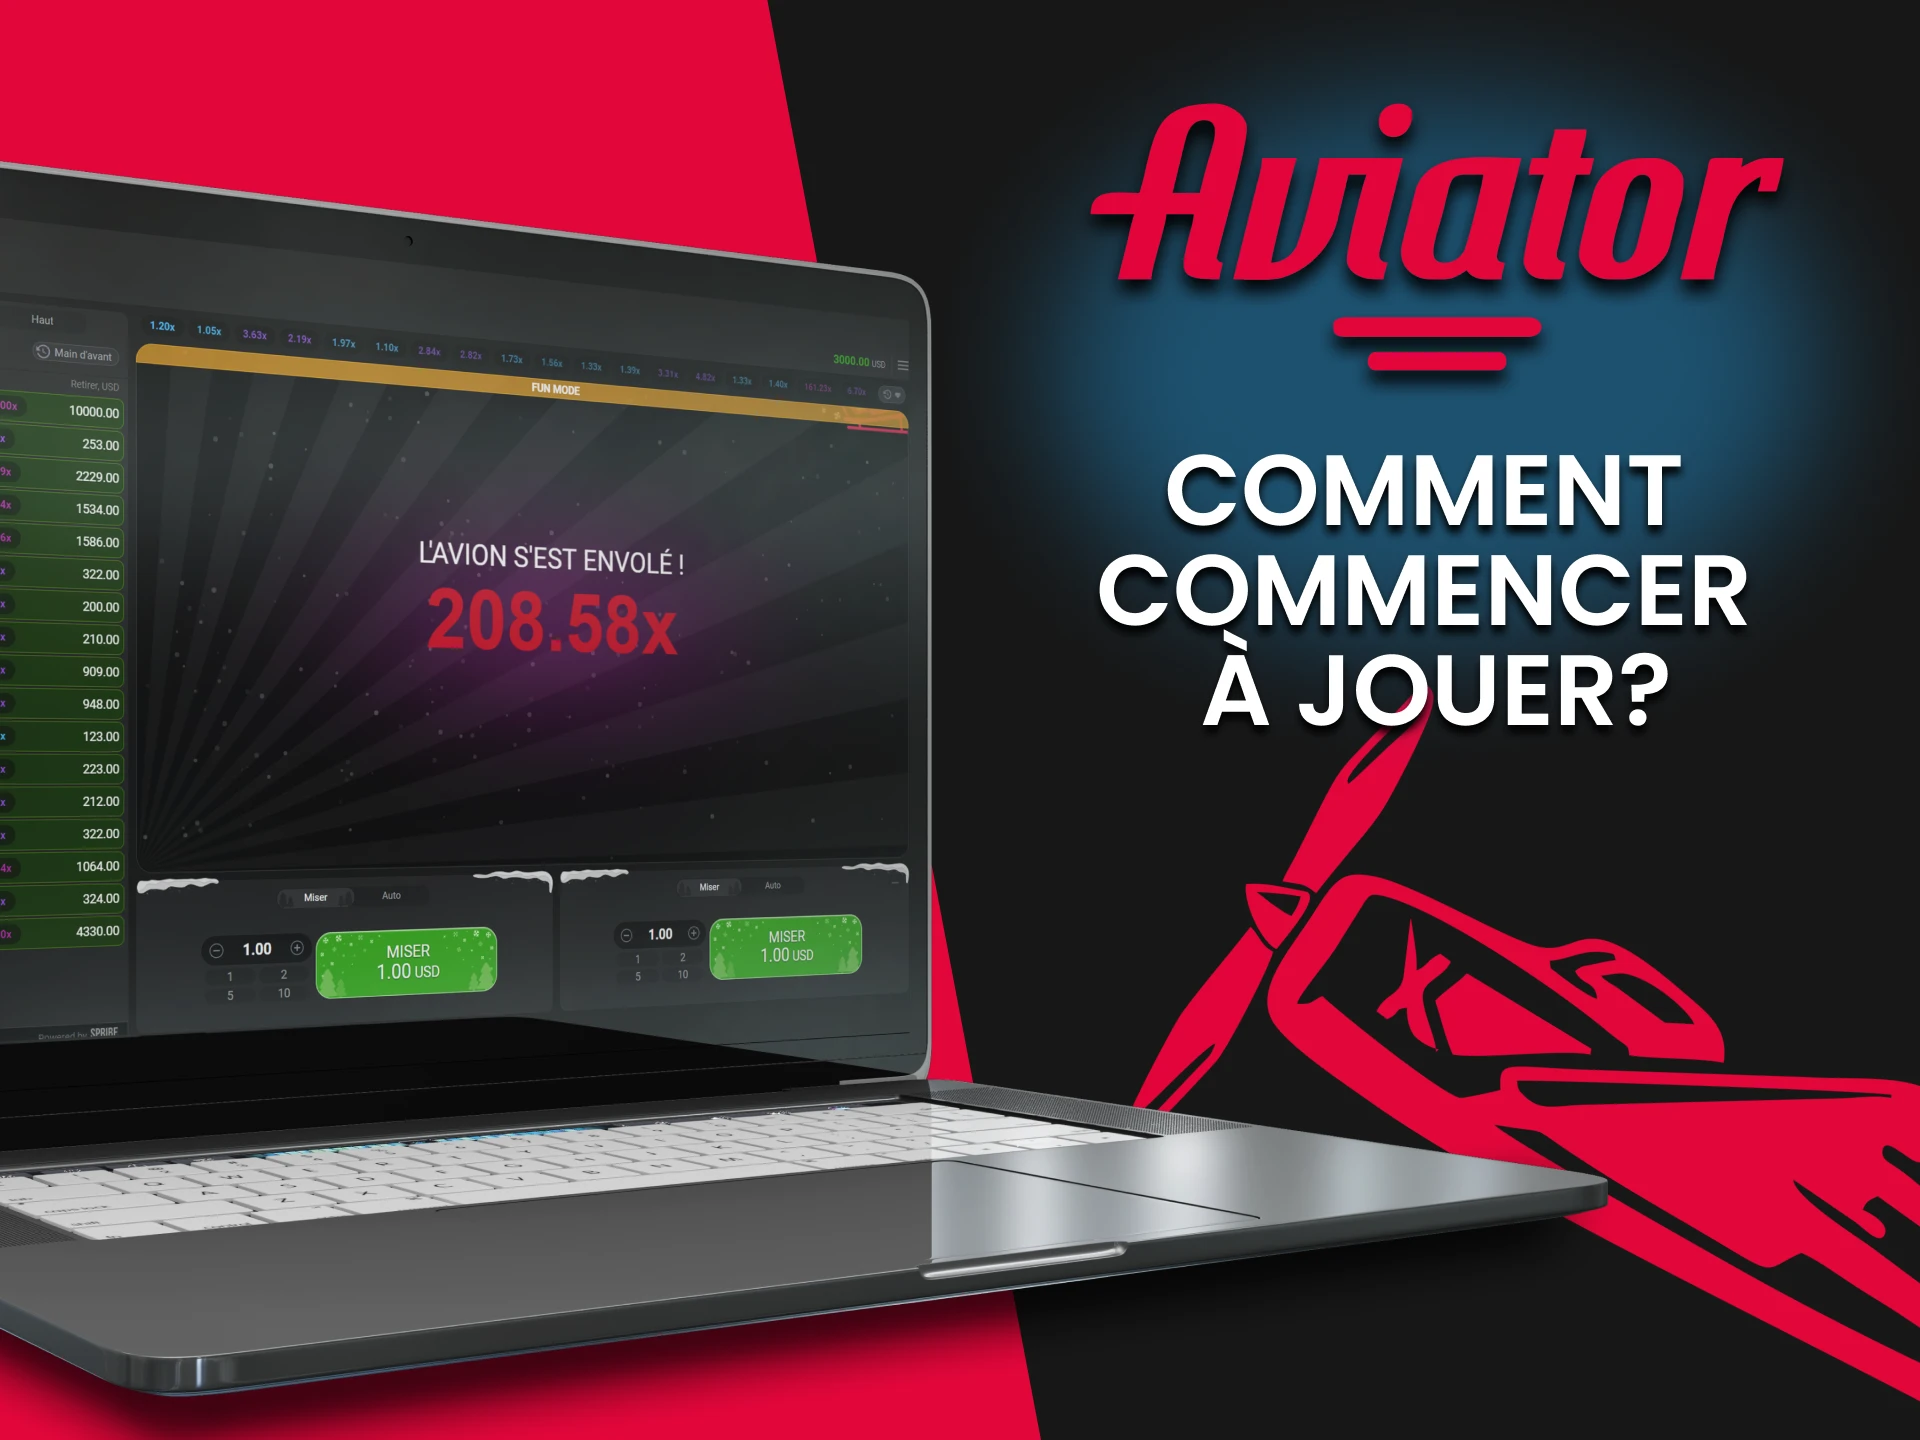 Nous vous expliquerons comment commencer à jouer à Aviator en utilisant Predictor.